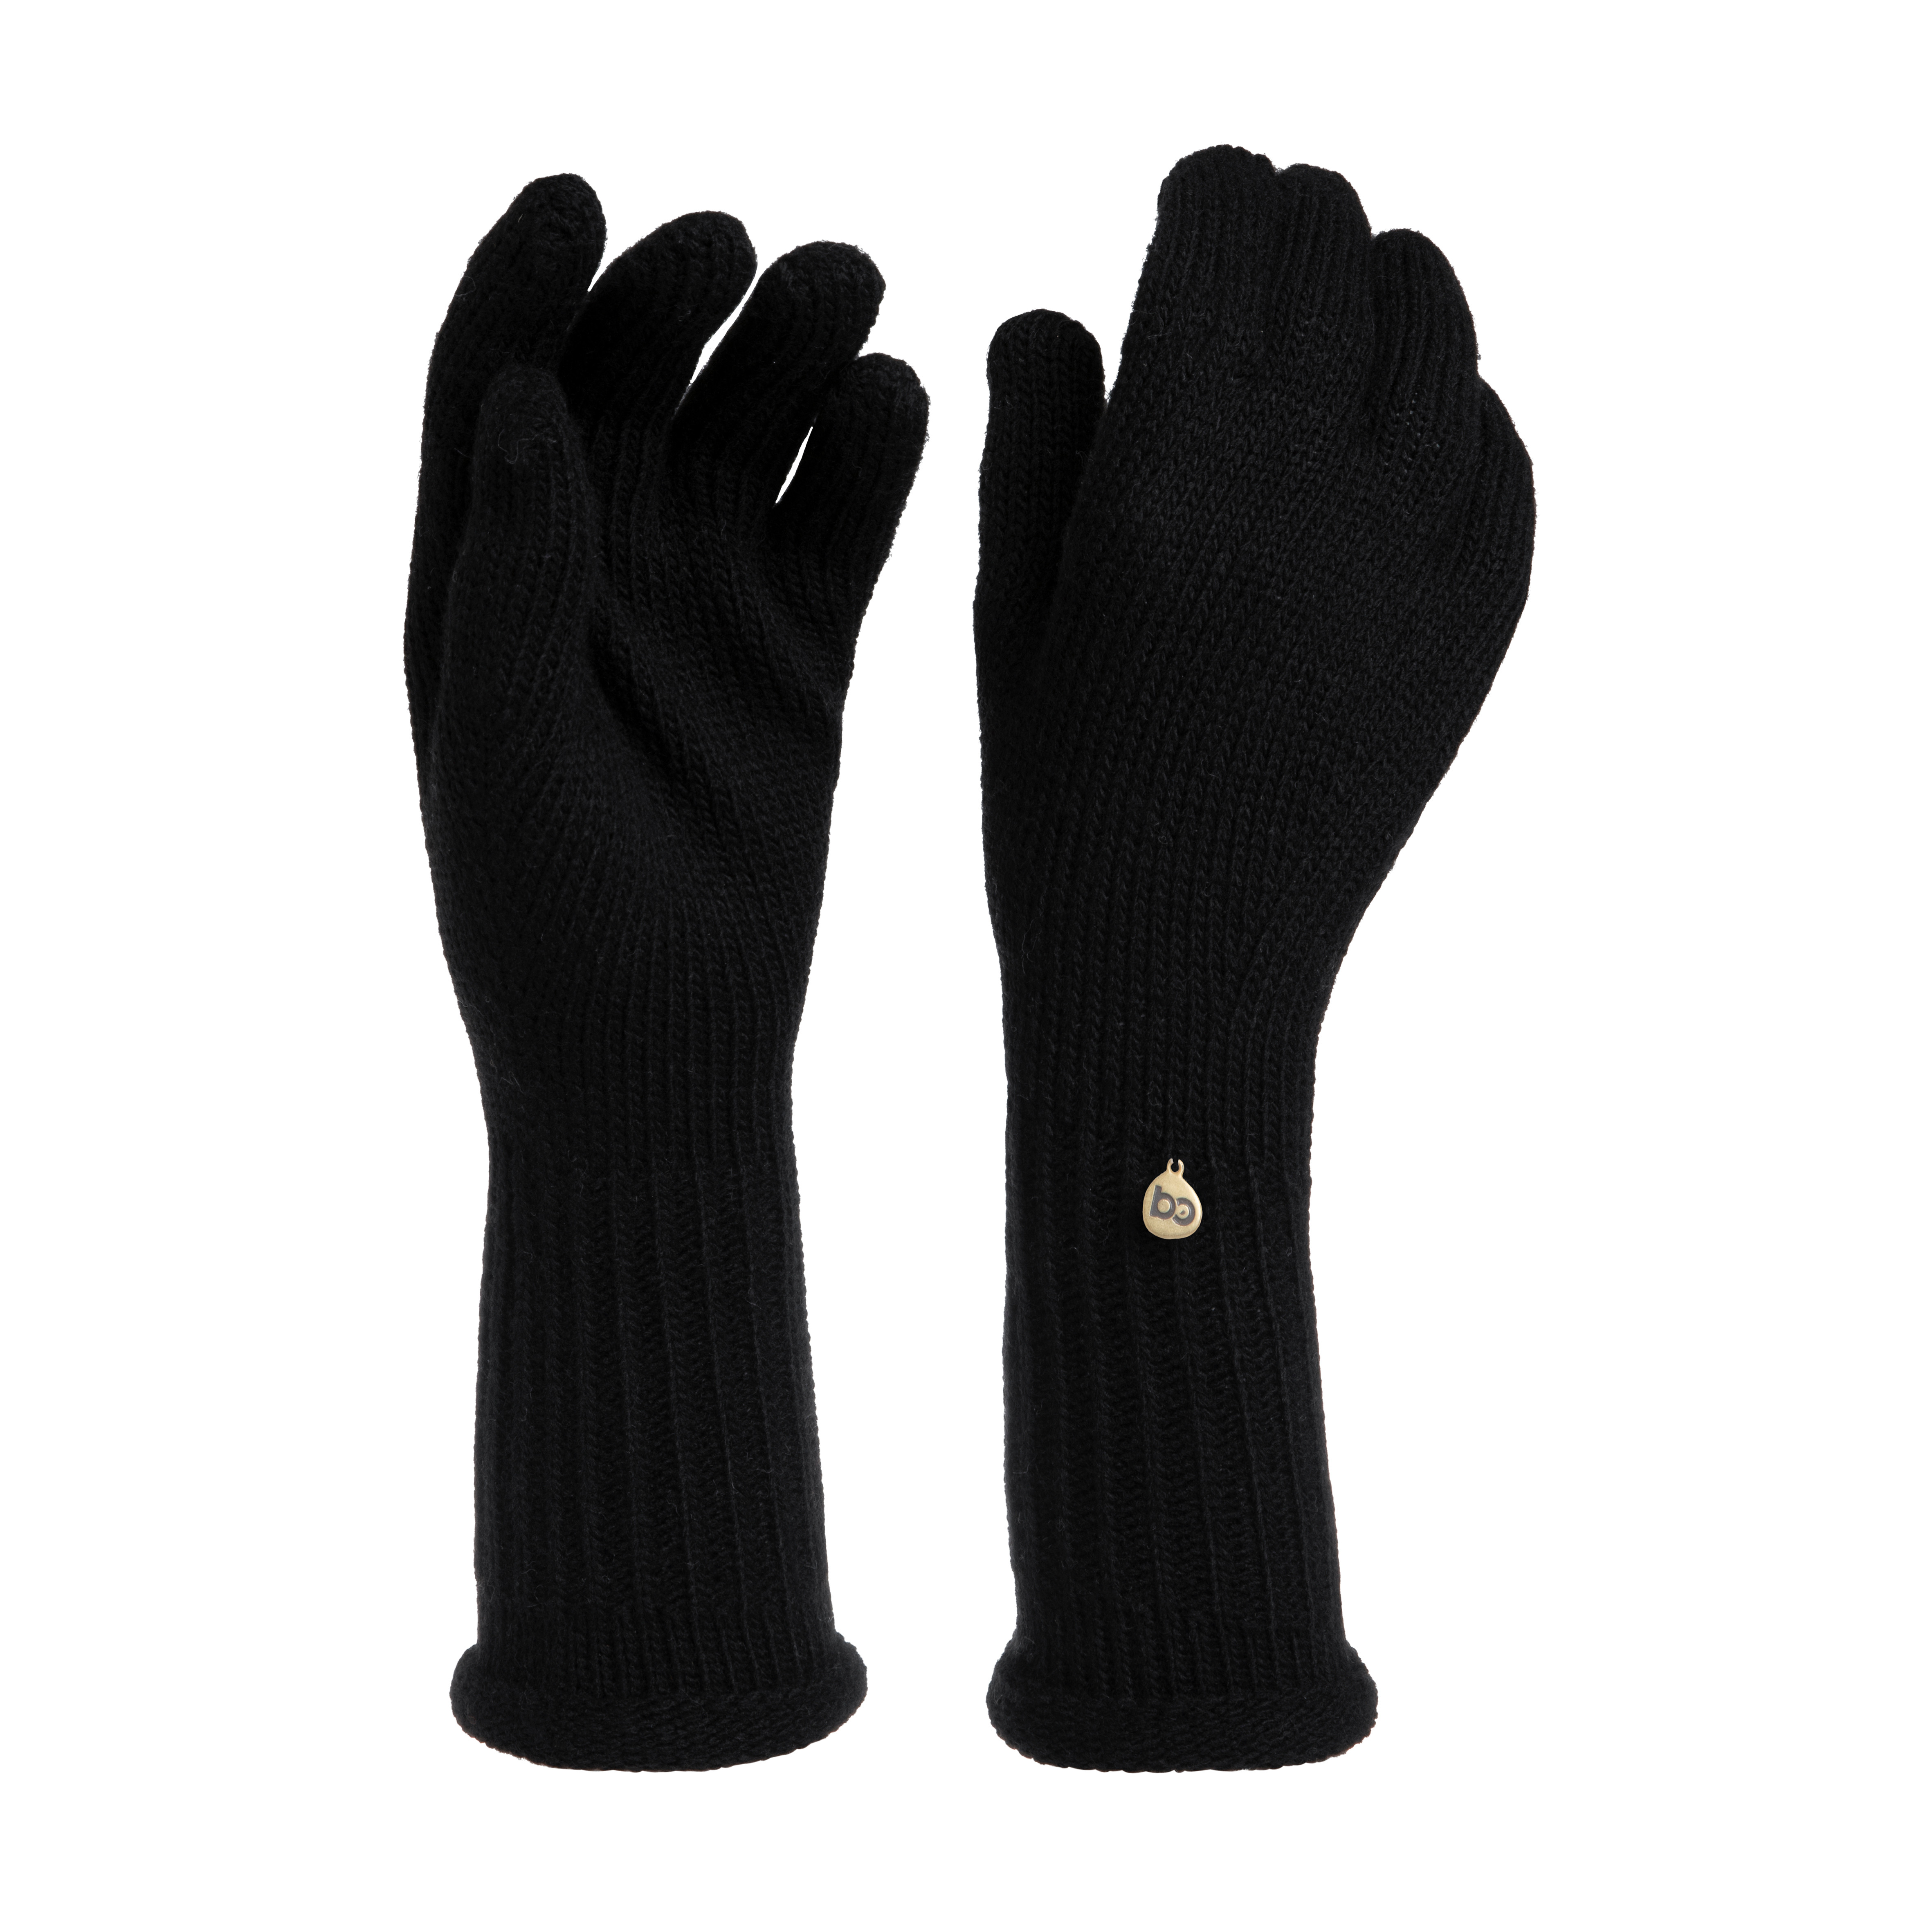 Handschoenen Glow zwart